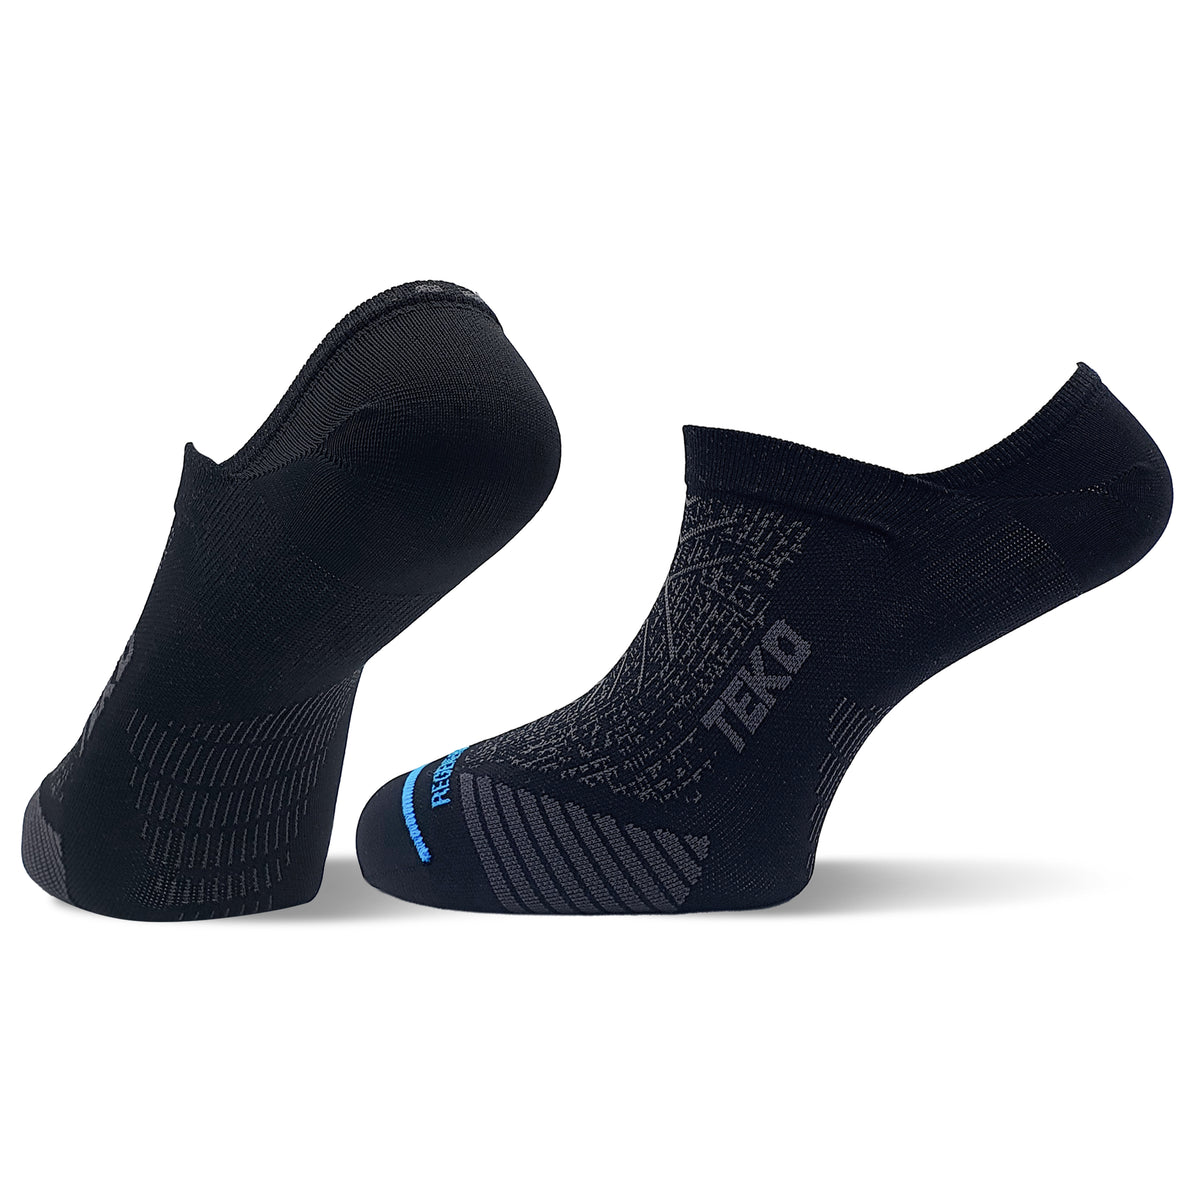 TEKO eco RUN 1.0 NO-SHOW Ultralight Running Socks - 2 PAIR PACK